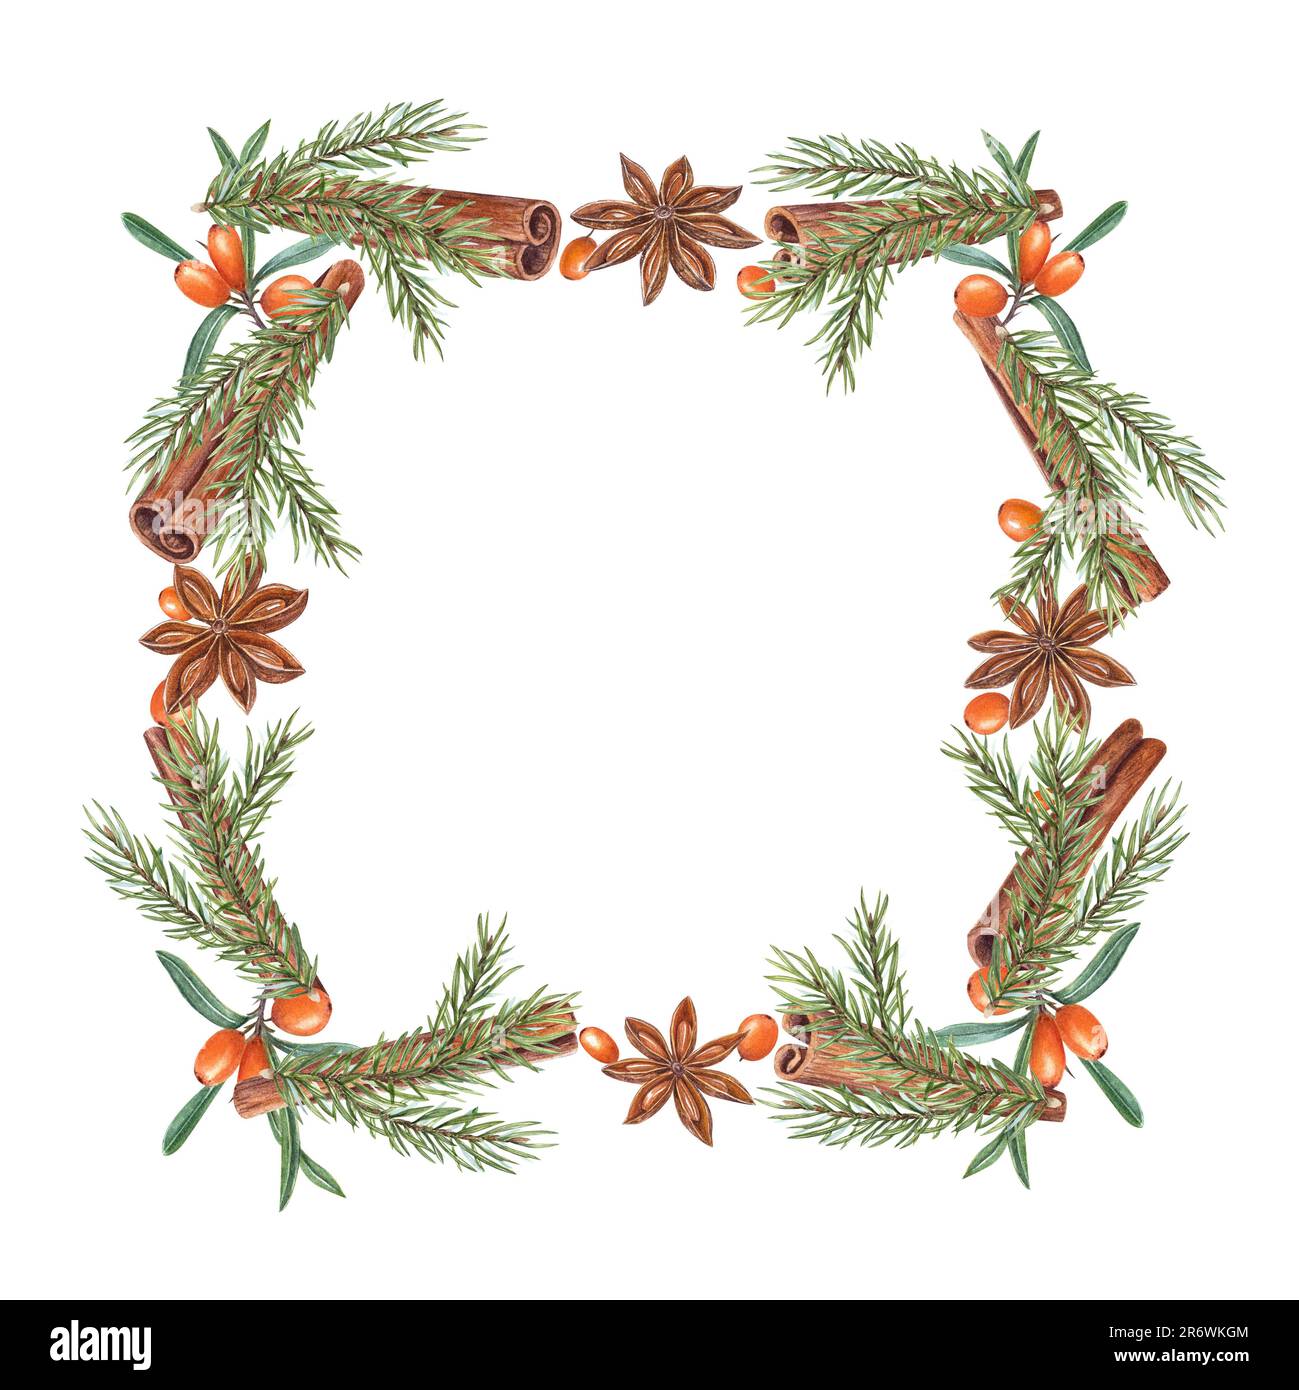 Aquarell mit Weihnachtsbaum, Zimt, Sternanis, Sanddorn isoliert auf weiß. Weihnachtsabbildung von grünem Baum, Orangenbeeren Stockfoto